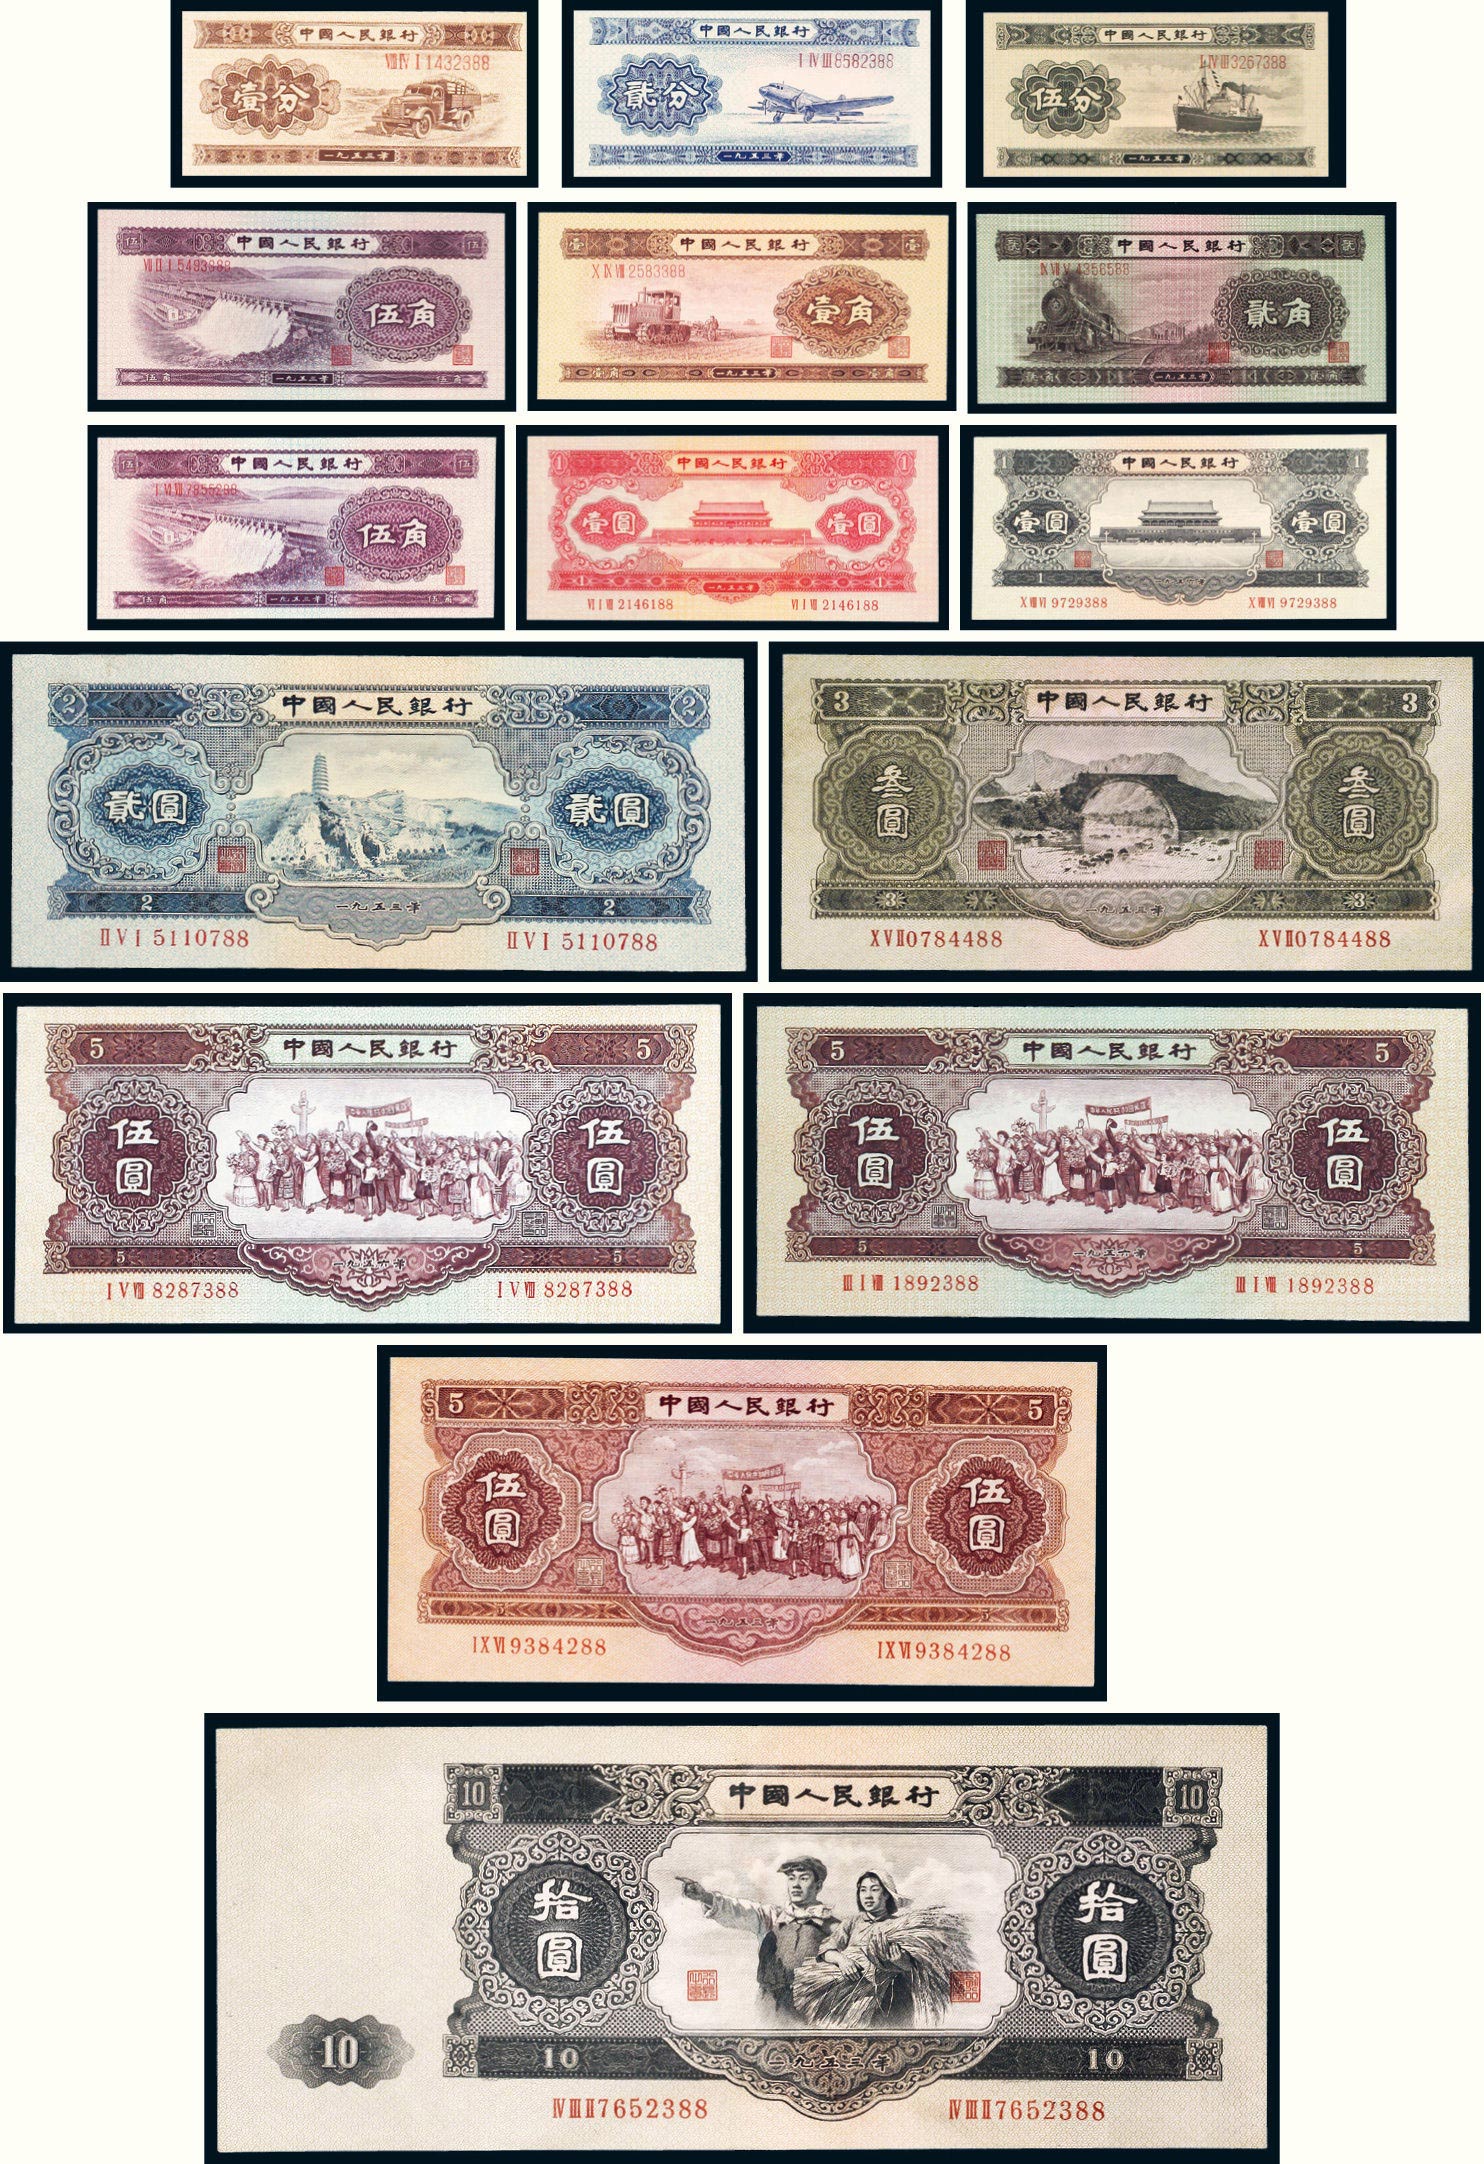 1949年第一版人民币伍圆水牛正、反面样票各一枚图片及价格- 芝麻开门收藏网